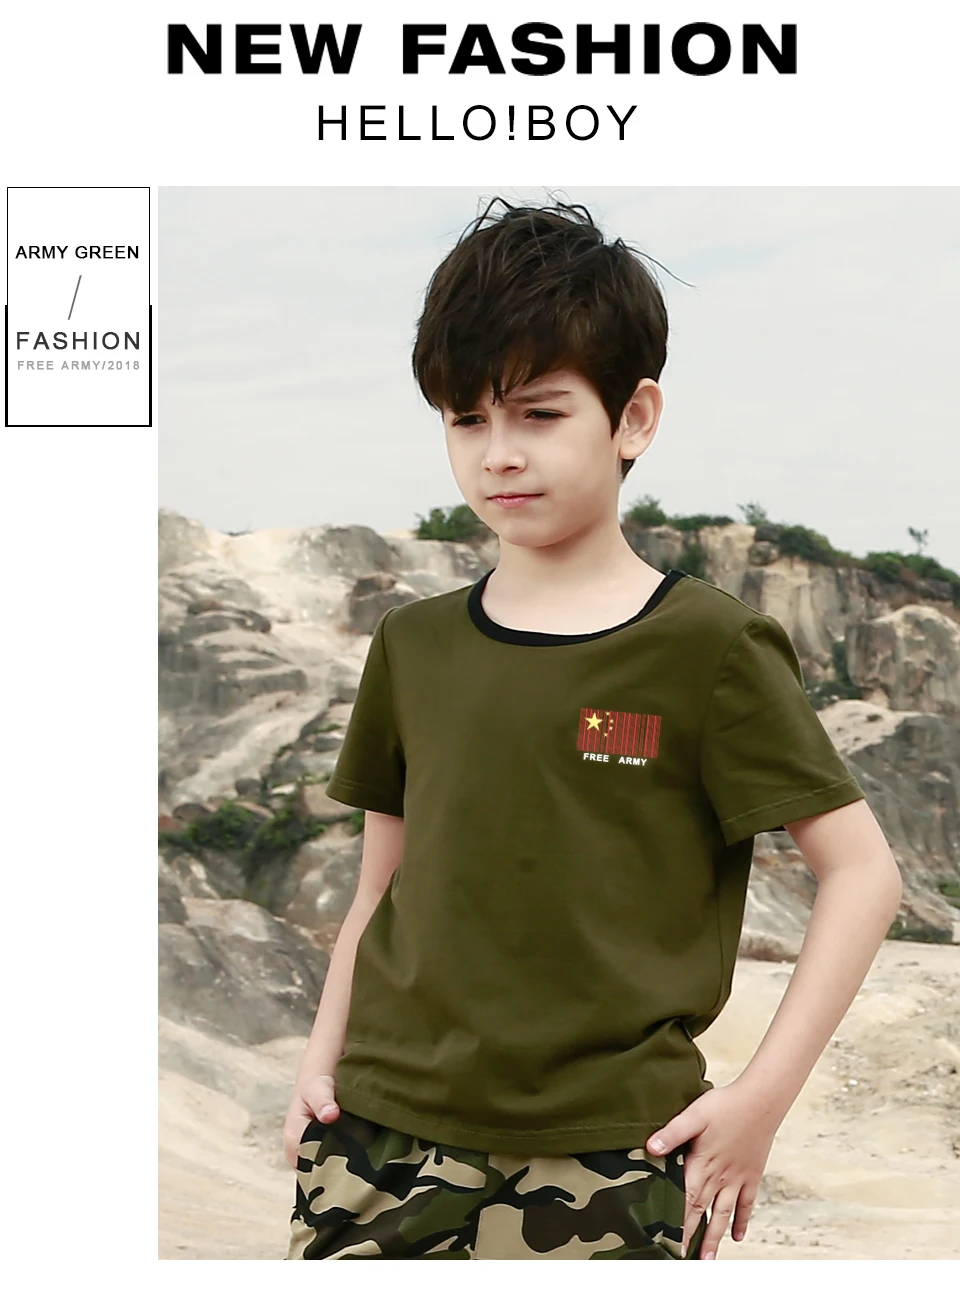 Детская футболка для девочек в стиле милитари-сафари детские футболки с короткими рукавами для мальчиков, верхняя одежда летние брендовые футболки для детей